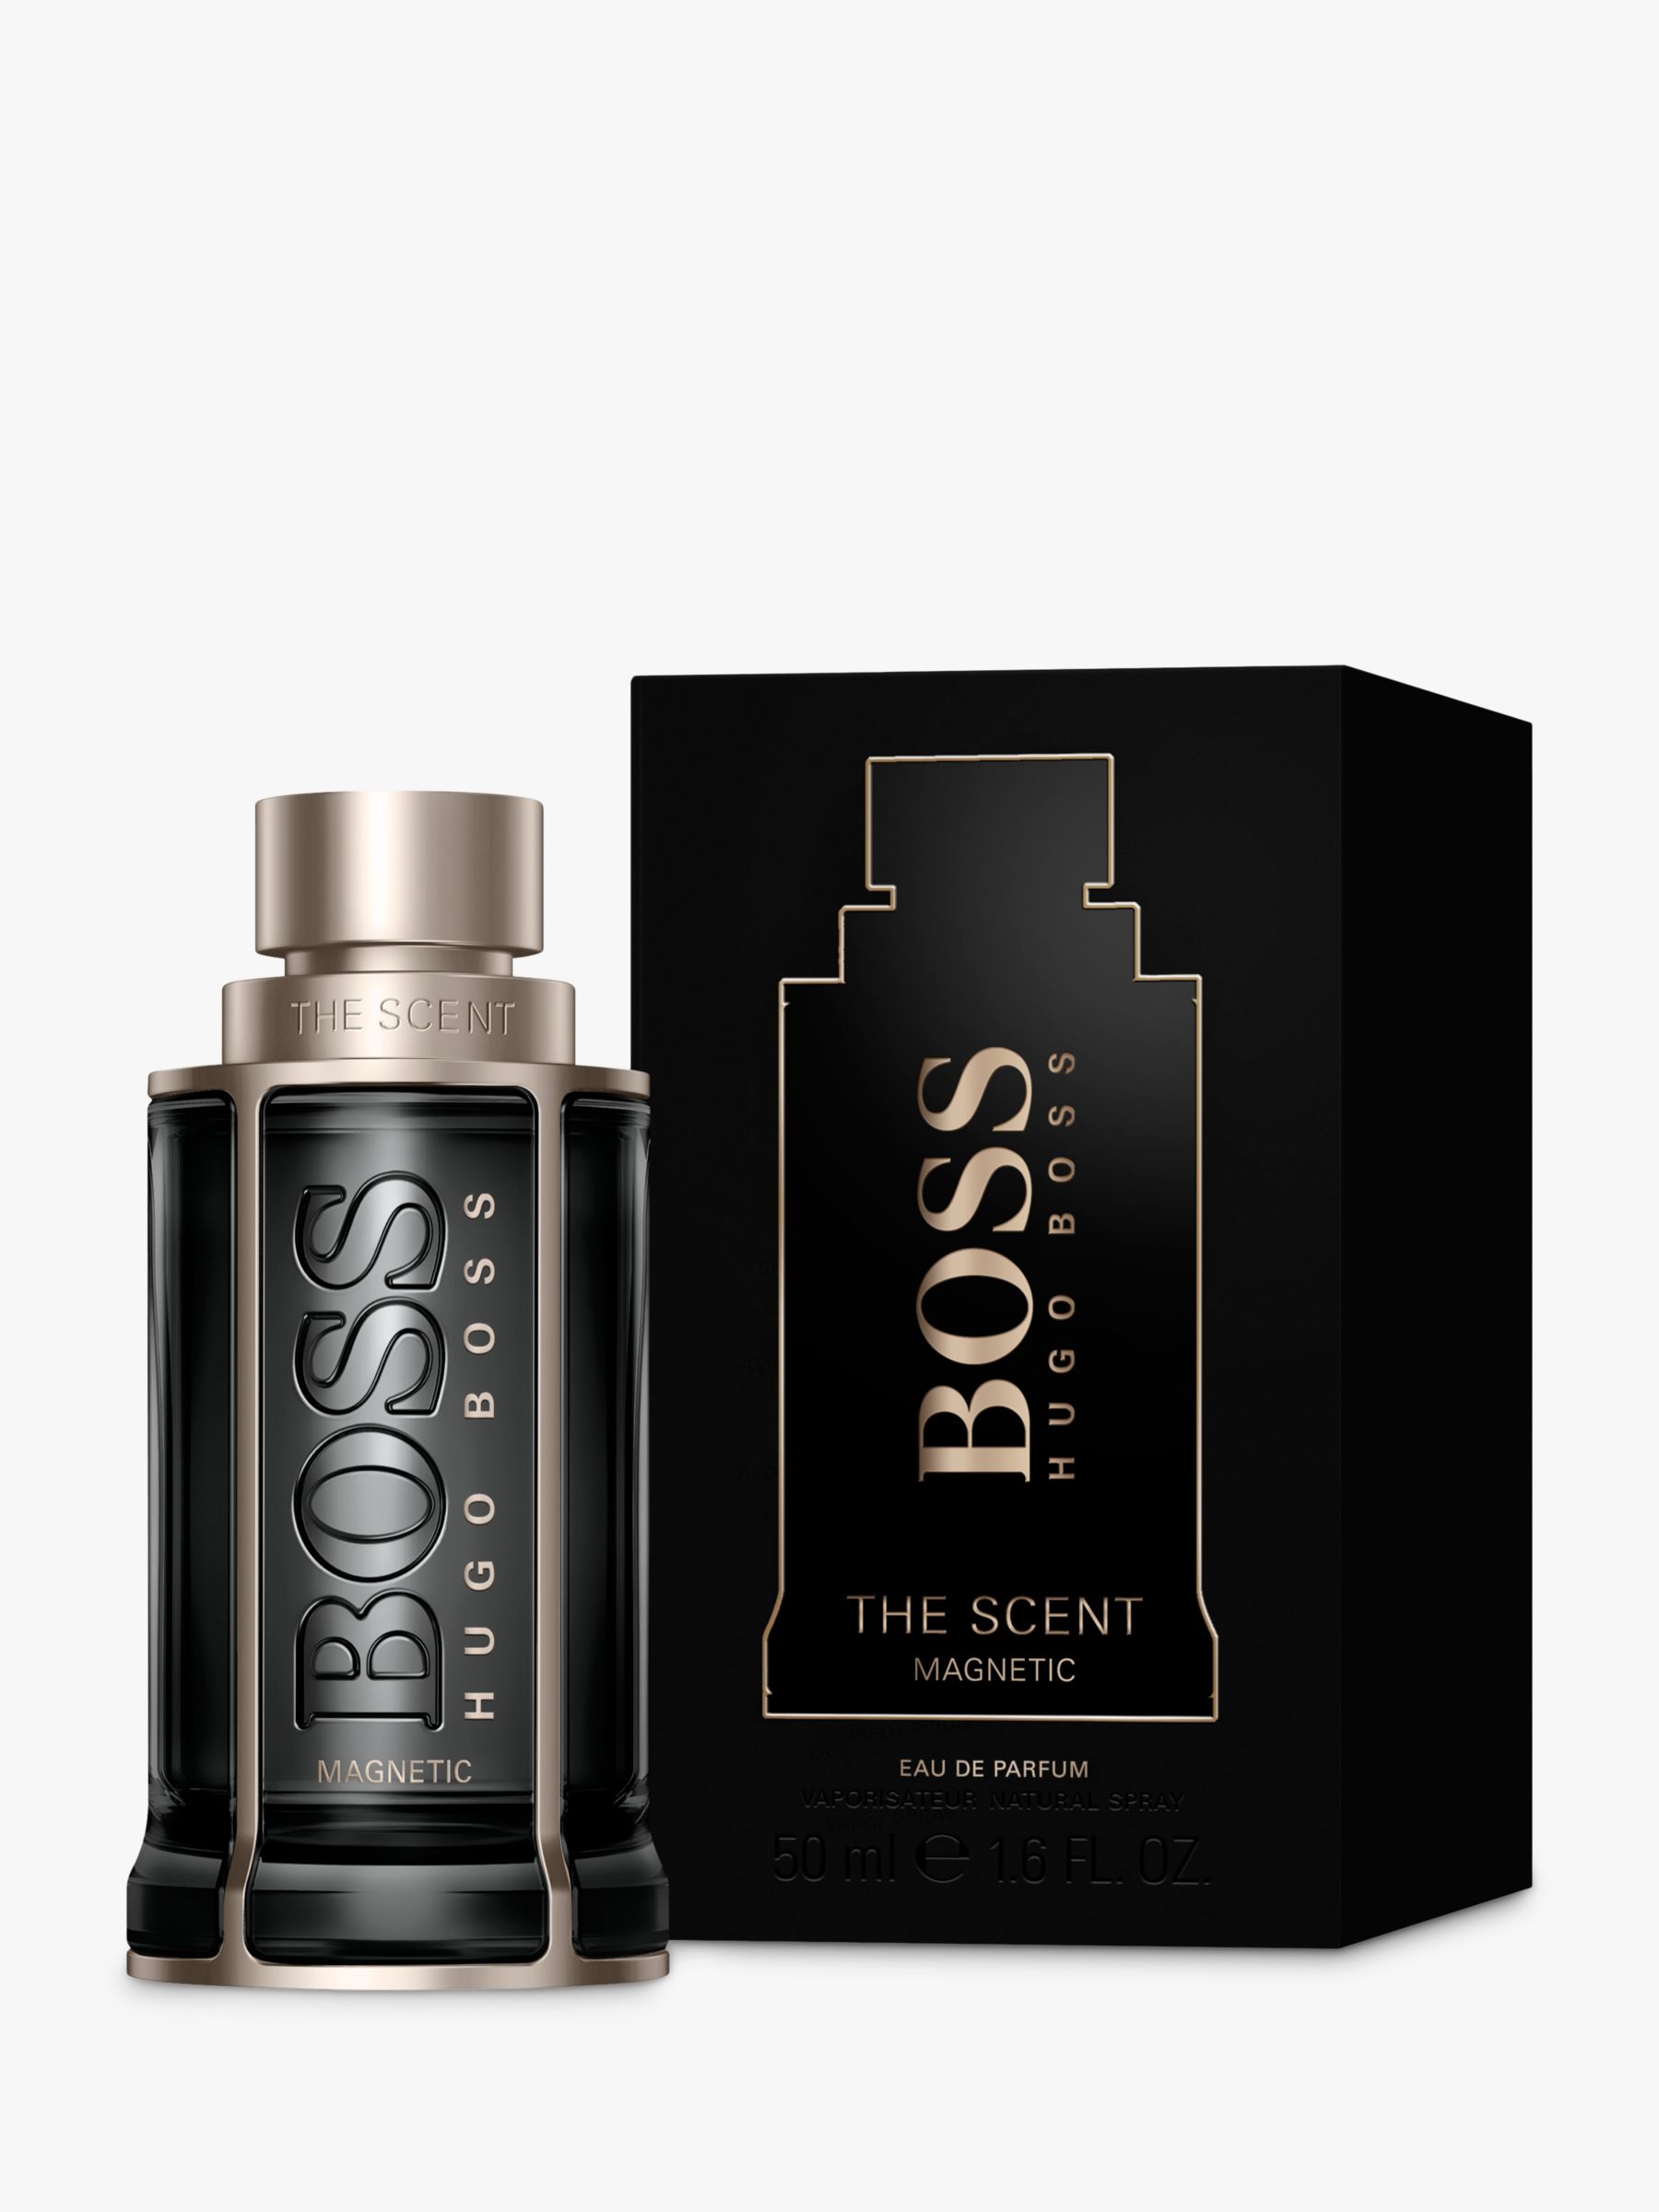 HUGO BOSS BOSS The Scent Magnetic For Him Eau de Parfum, 50ml